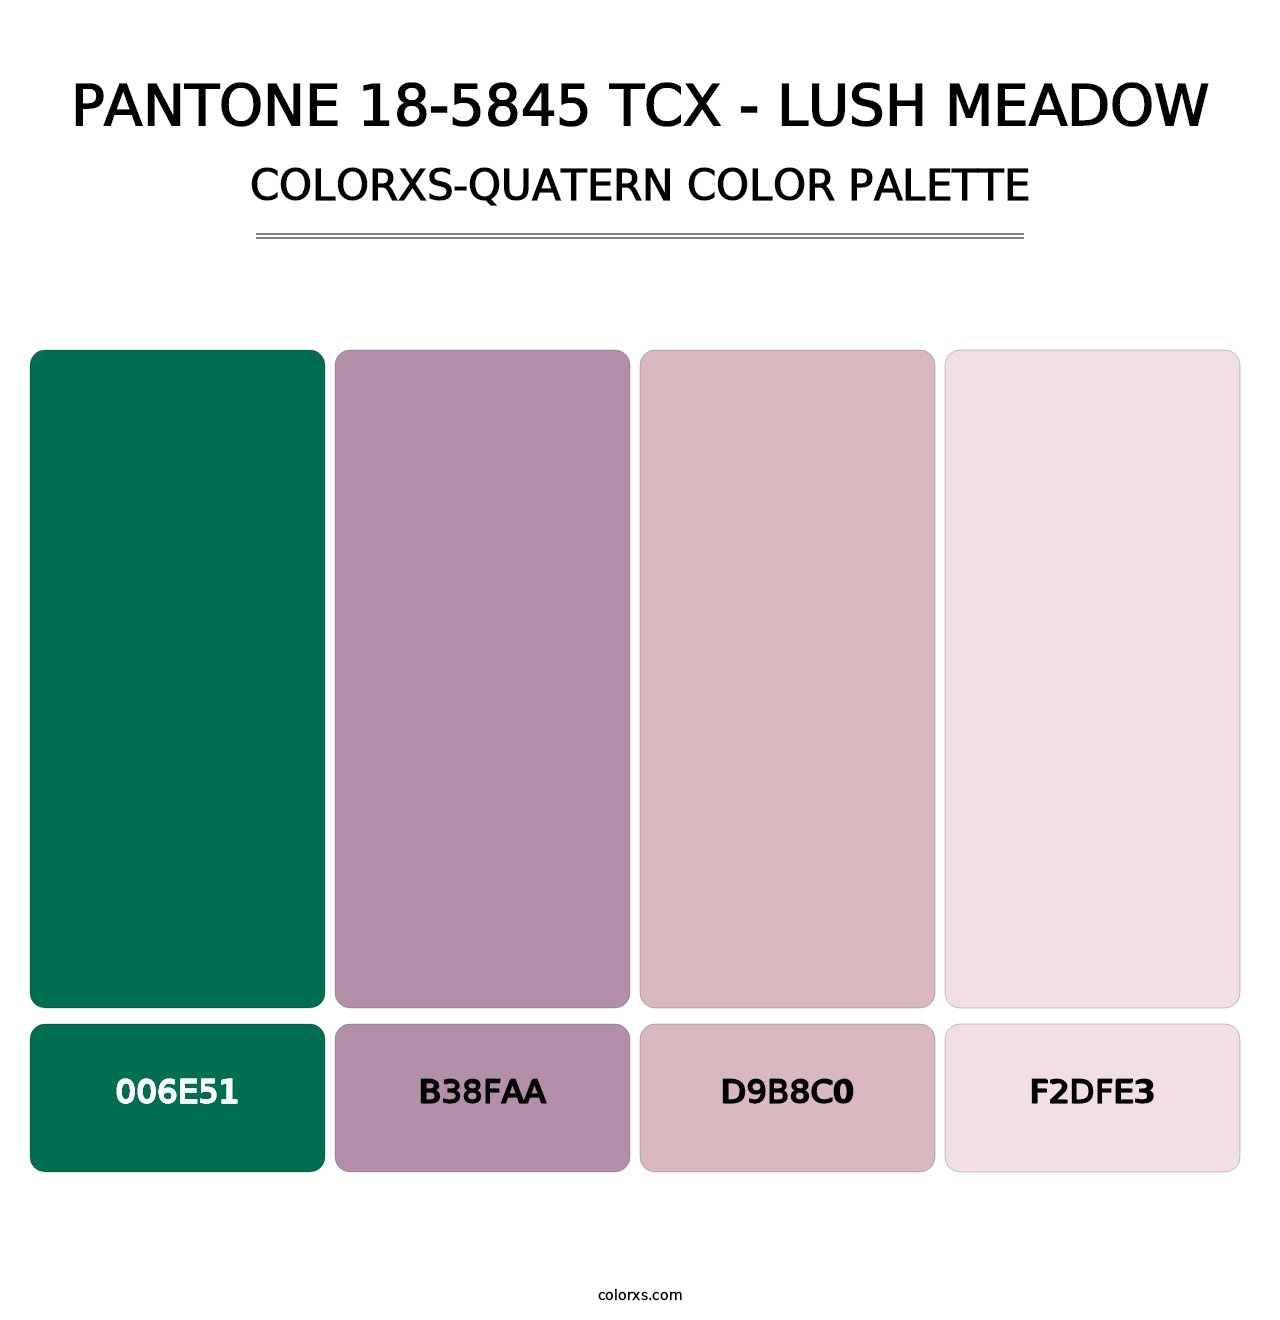 PANTONE 18-5845 TCX - Lush Meadow - Colorxs Quatern Palette